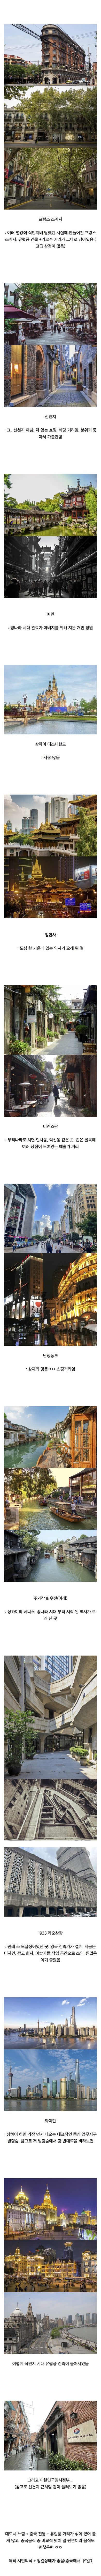 중국 도시 중 관광평이 좋다는 곳